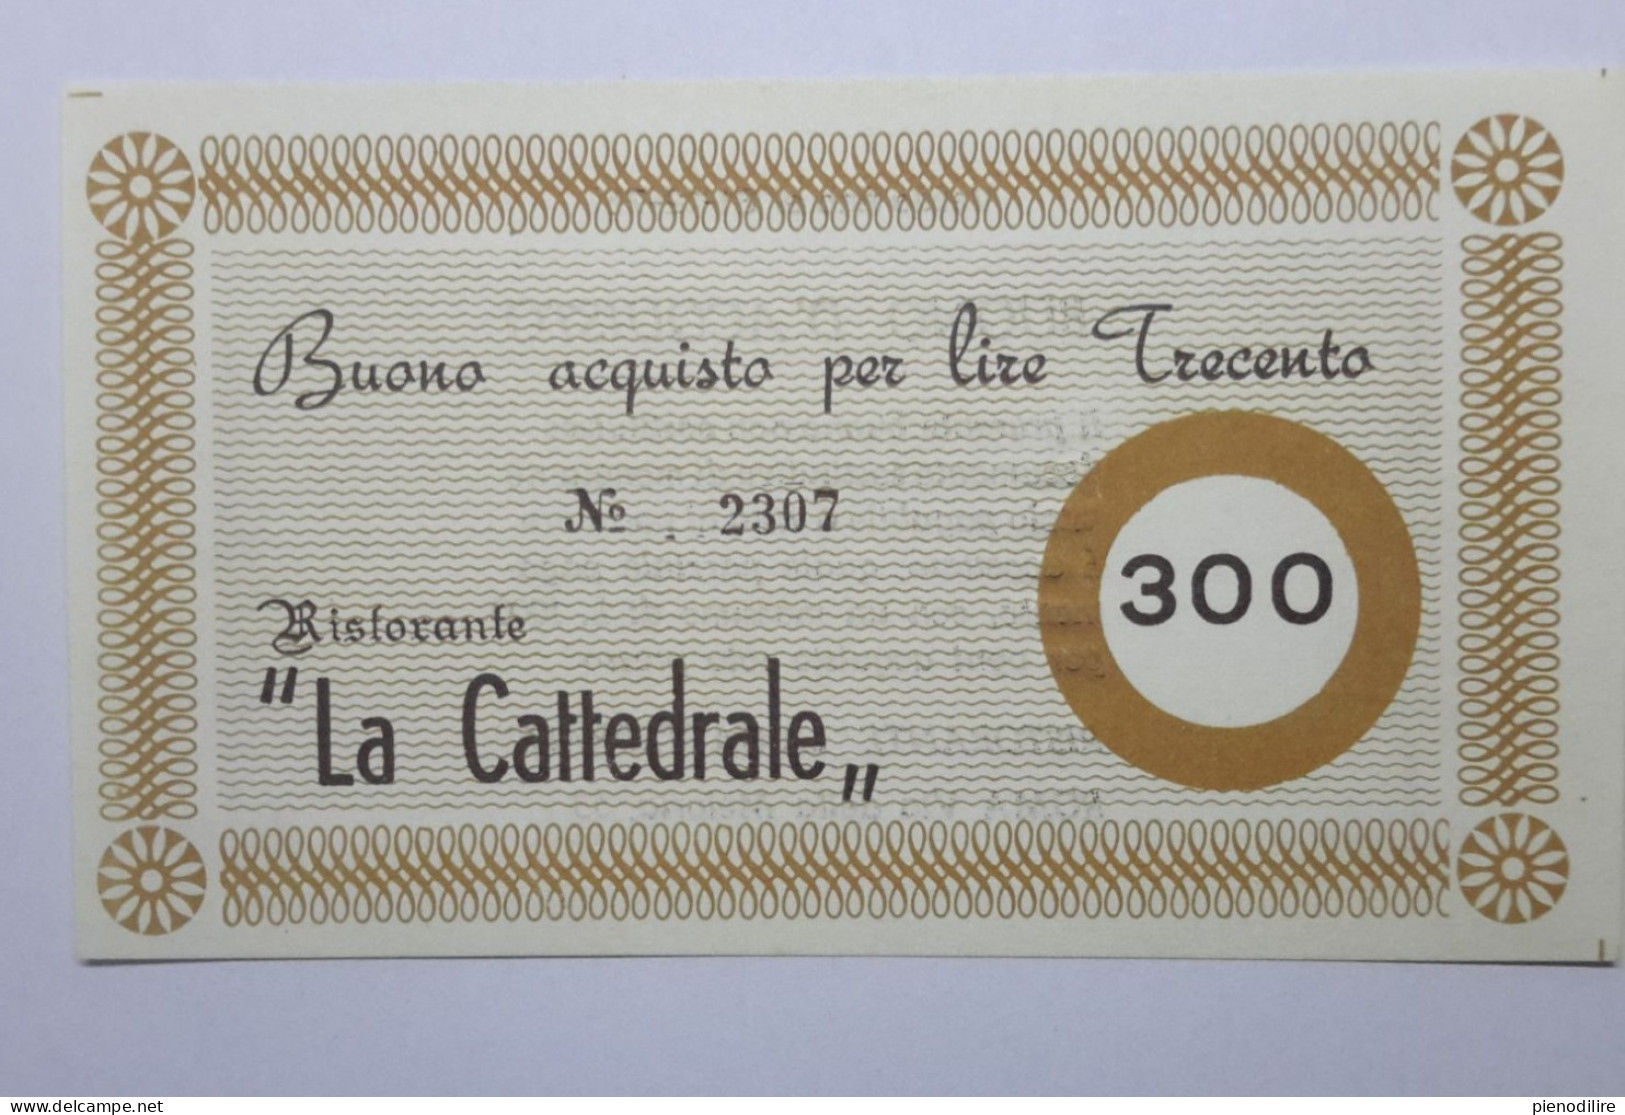 LOTTO 4Pz. 100 200 300 400 LIRE BUONI ACQUISTO RISTORANTE LA CATTEDRALE ROMA VALIDO FINO AL 31.12.1976 (A.4) - [10] Checks And Mini-checks